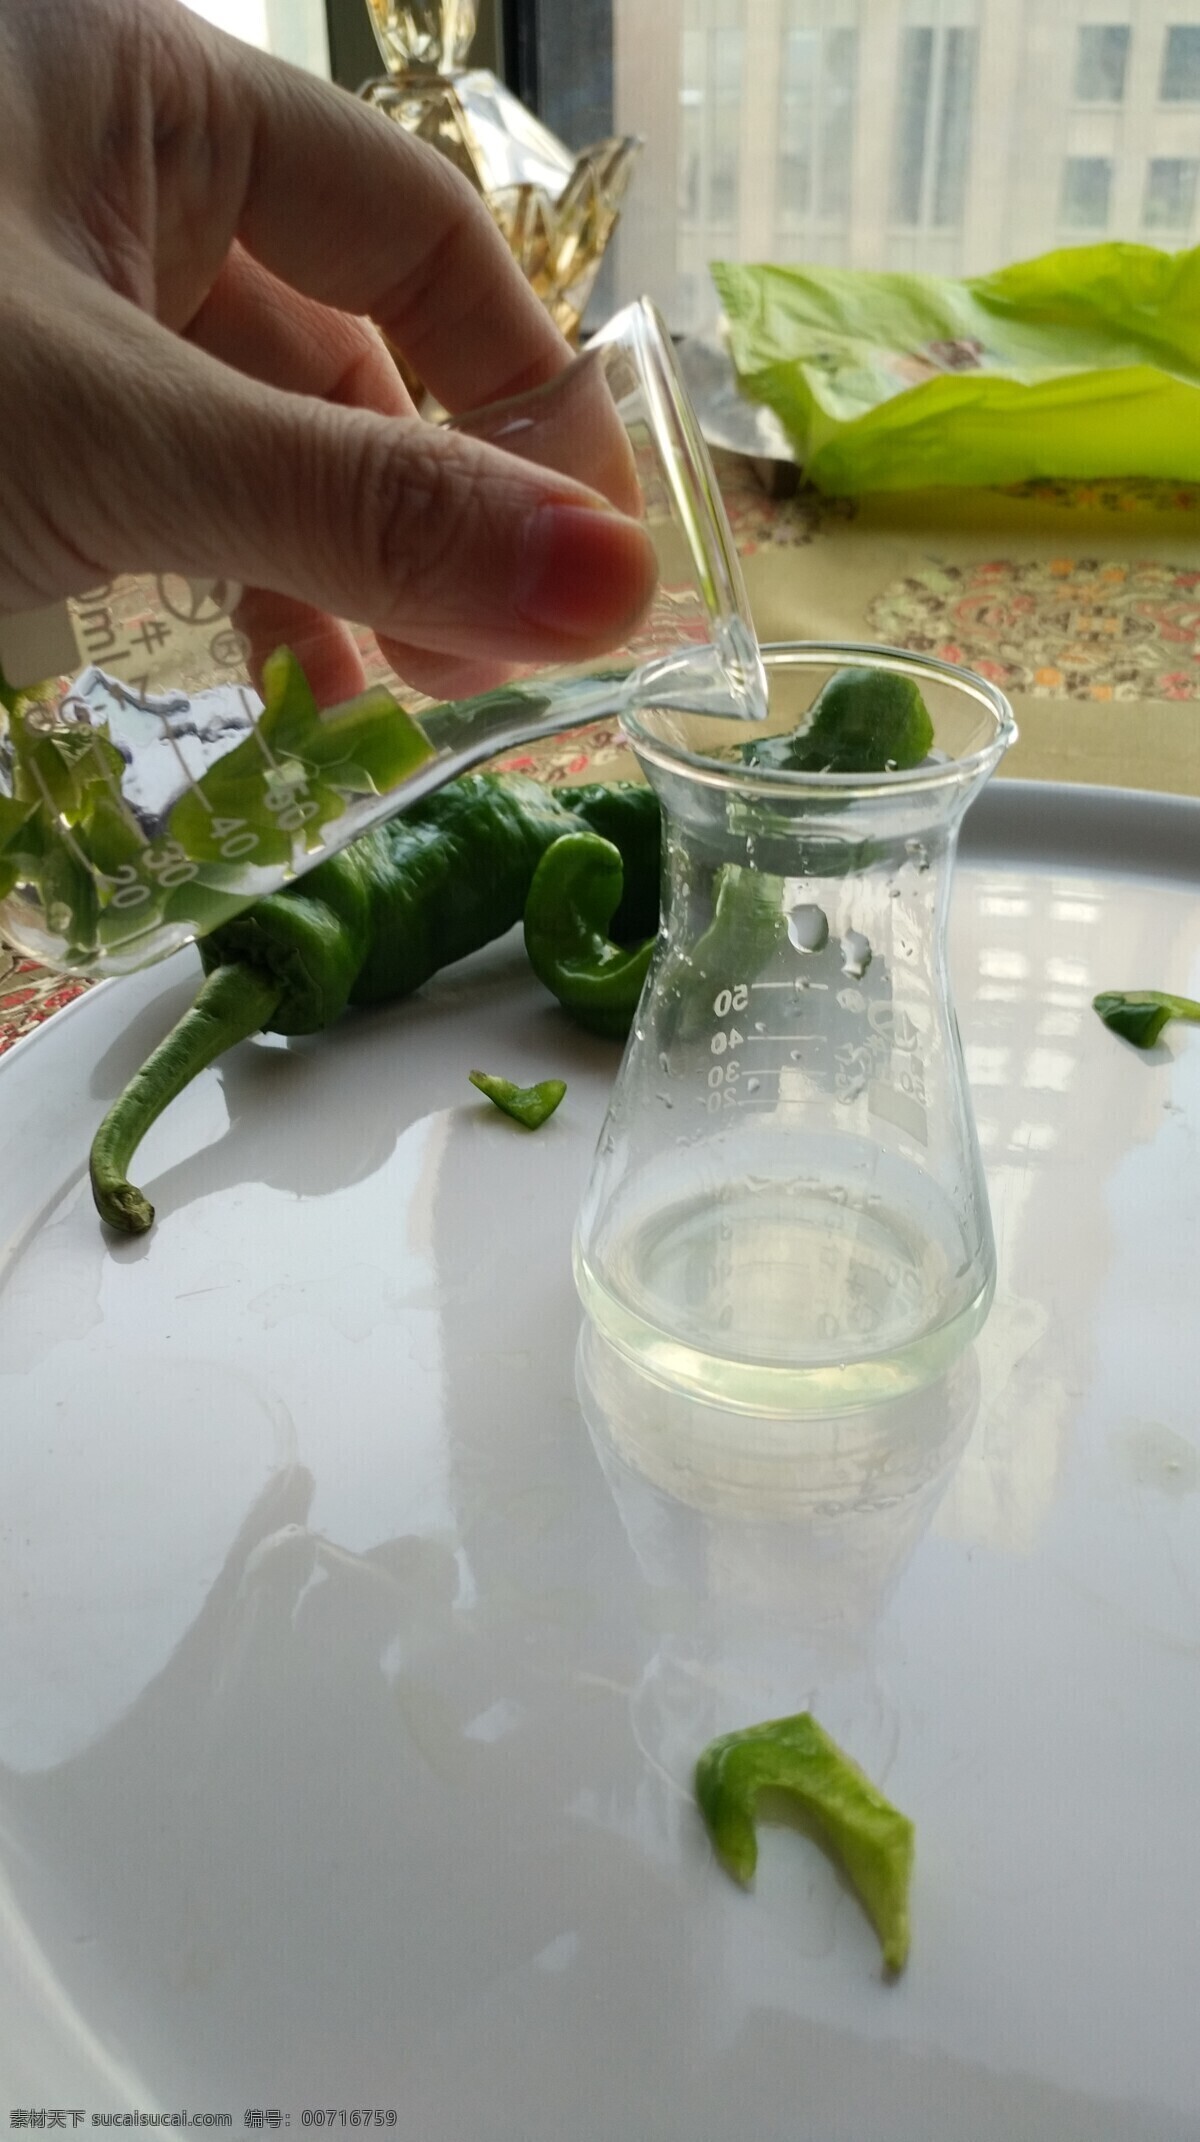 辣椒检测 检查 检验 实验 科学 农残 有机 绿色 无公害 科学设备 现代科技